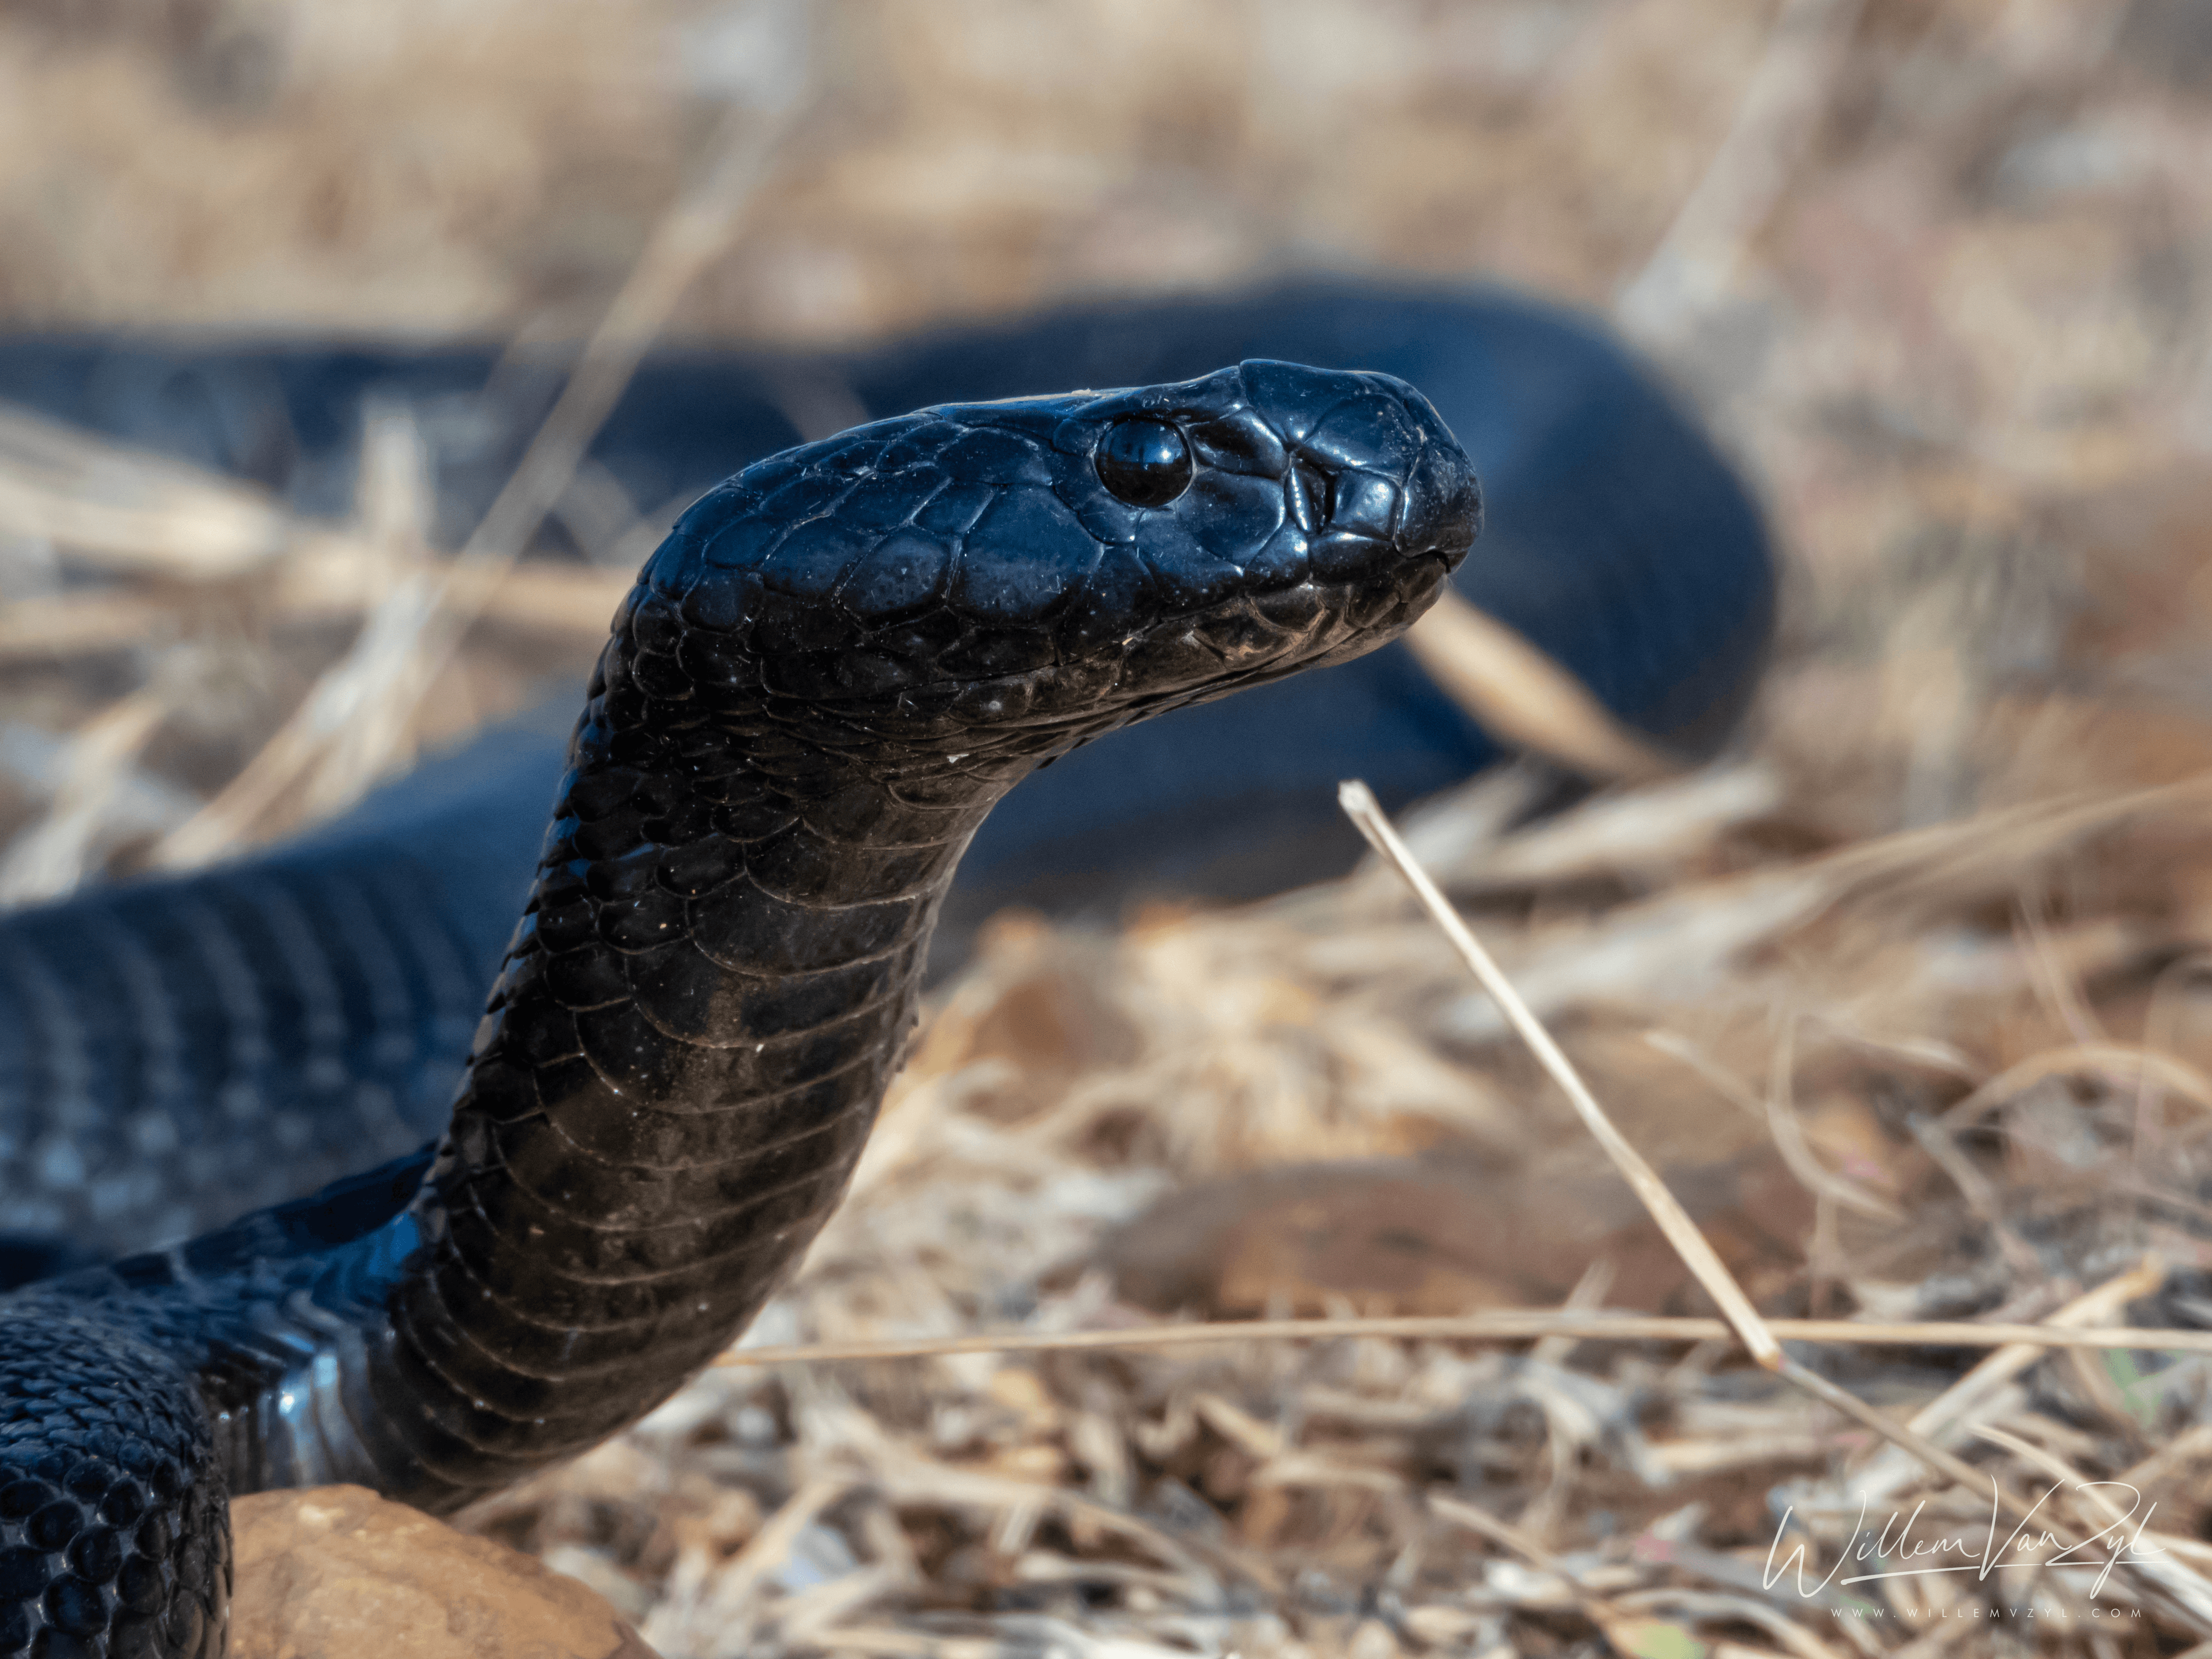 Black Spitting Cobra (Naja nigricincta woodi)